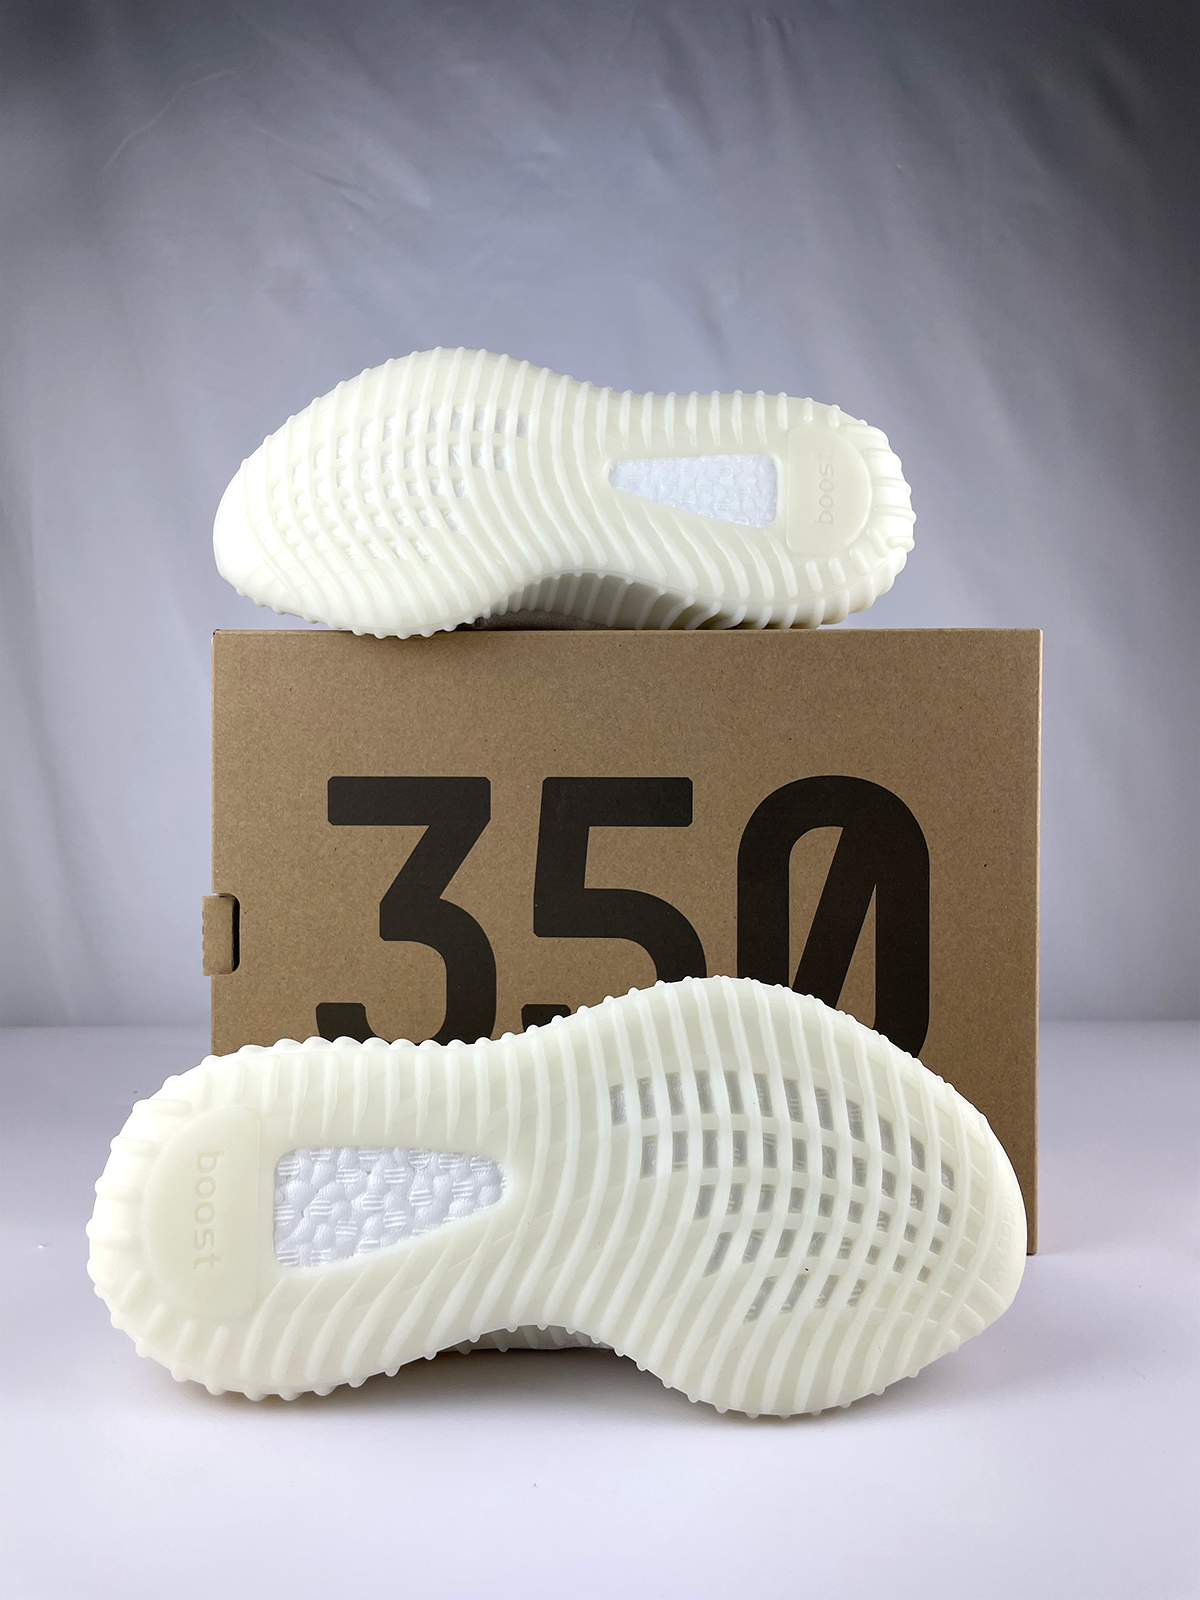 Adidas Yeezy Boost 350 V2 'Bone' 8.5